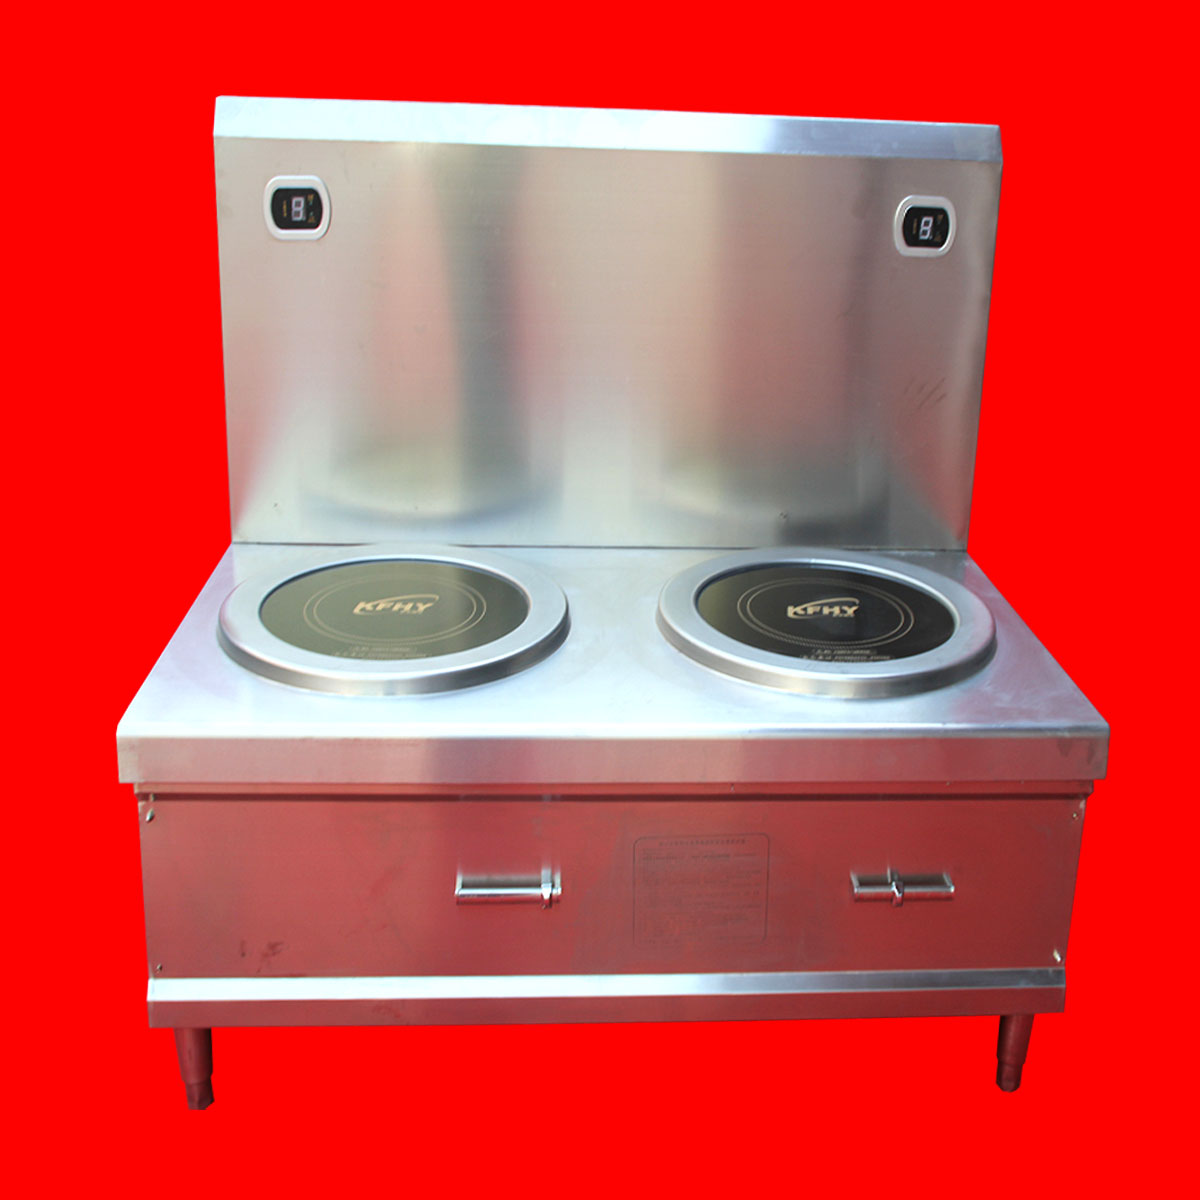 白银磁莱德商用电磁煮面炉,大功率电磁炉优质服务